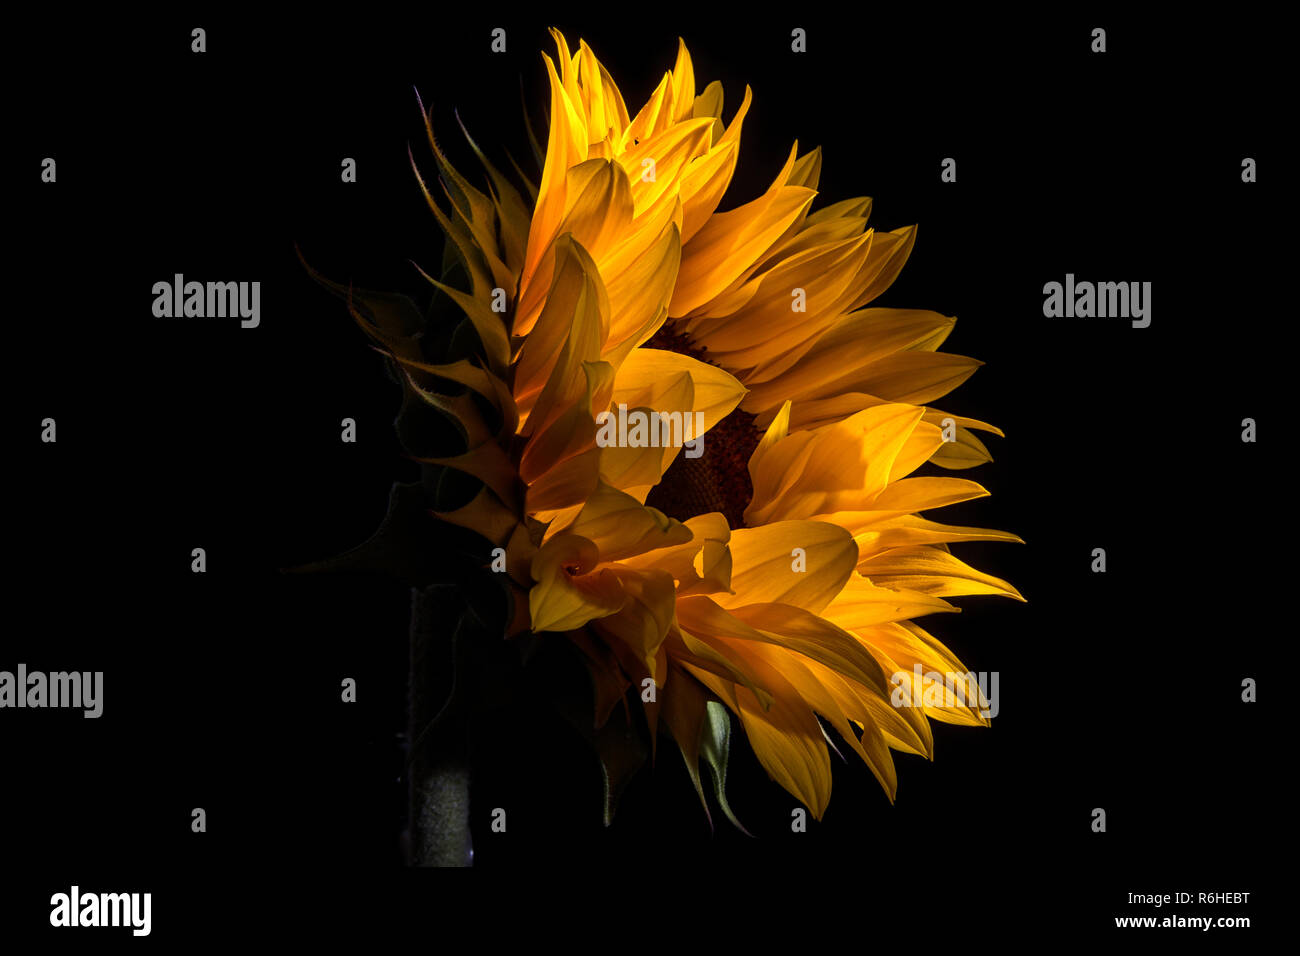 sunflower macro details Stock Photo